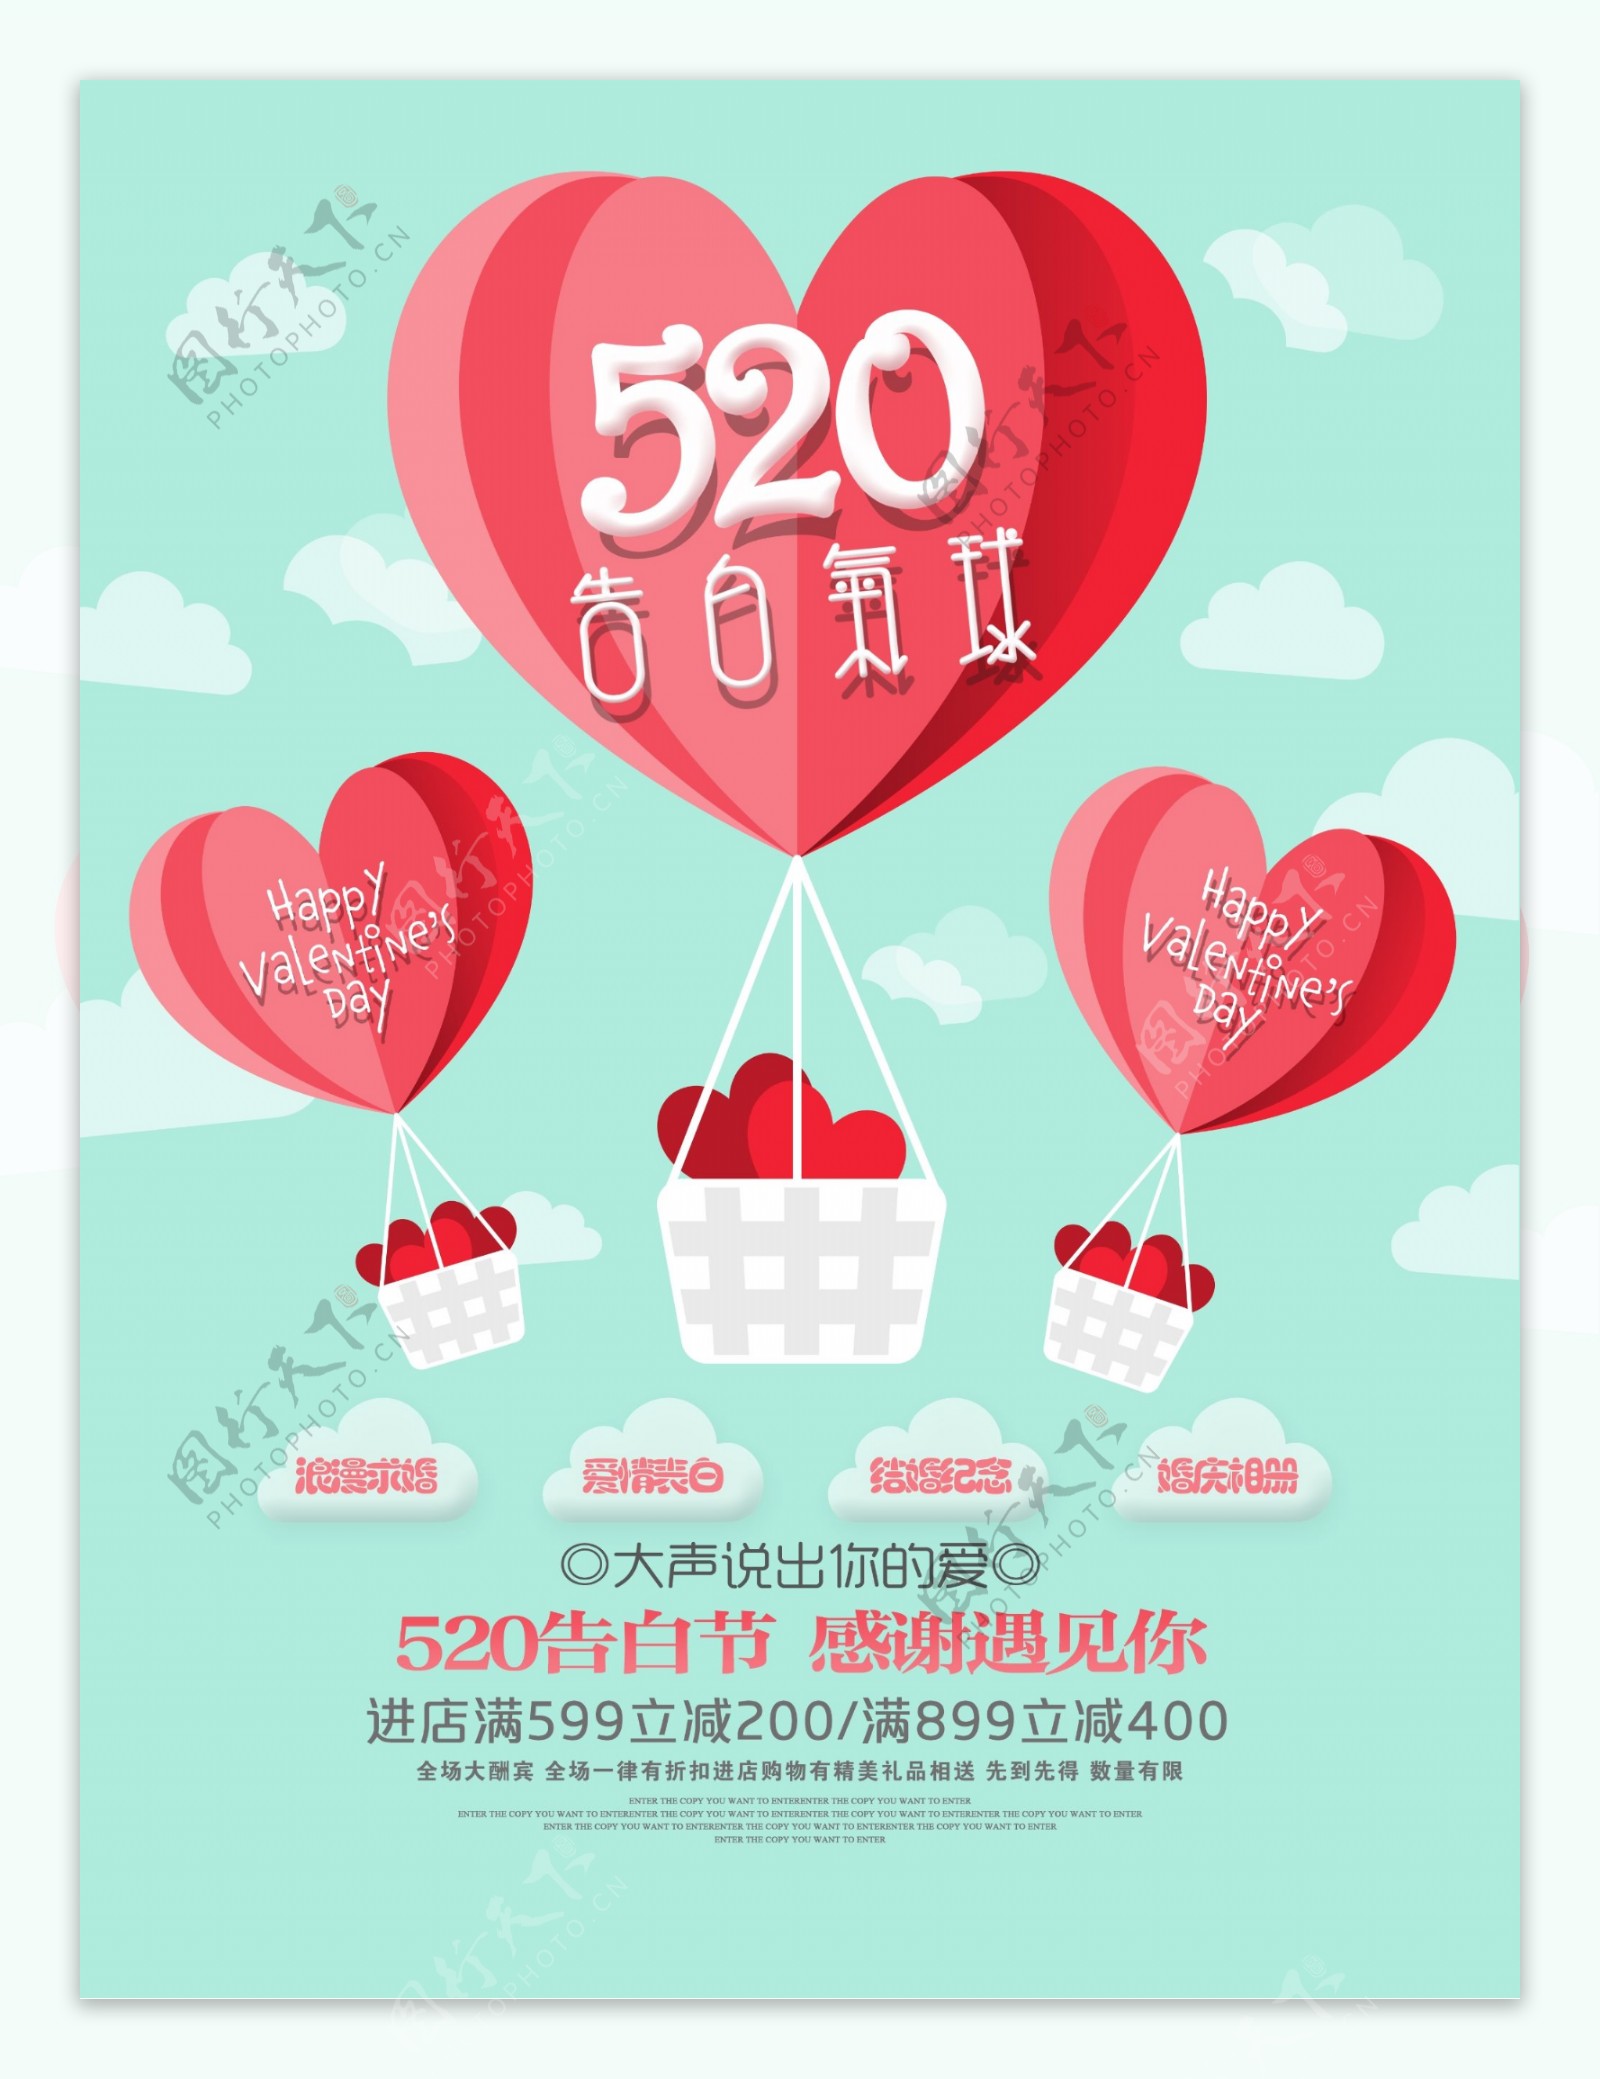 520告白节促销活动宣传海报